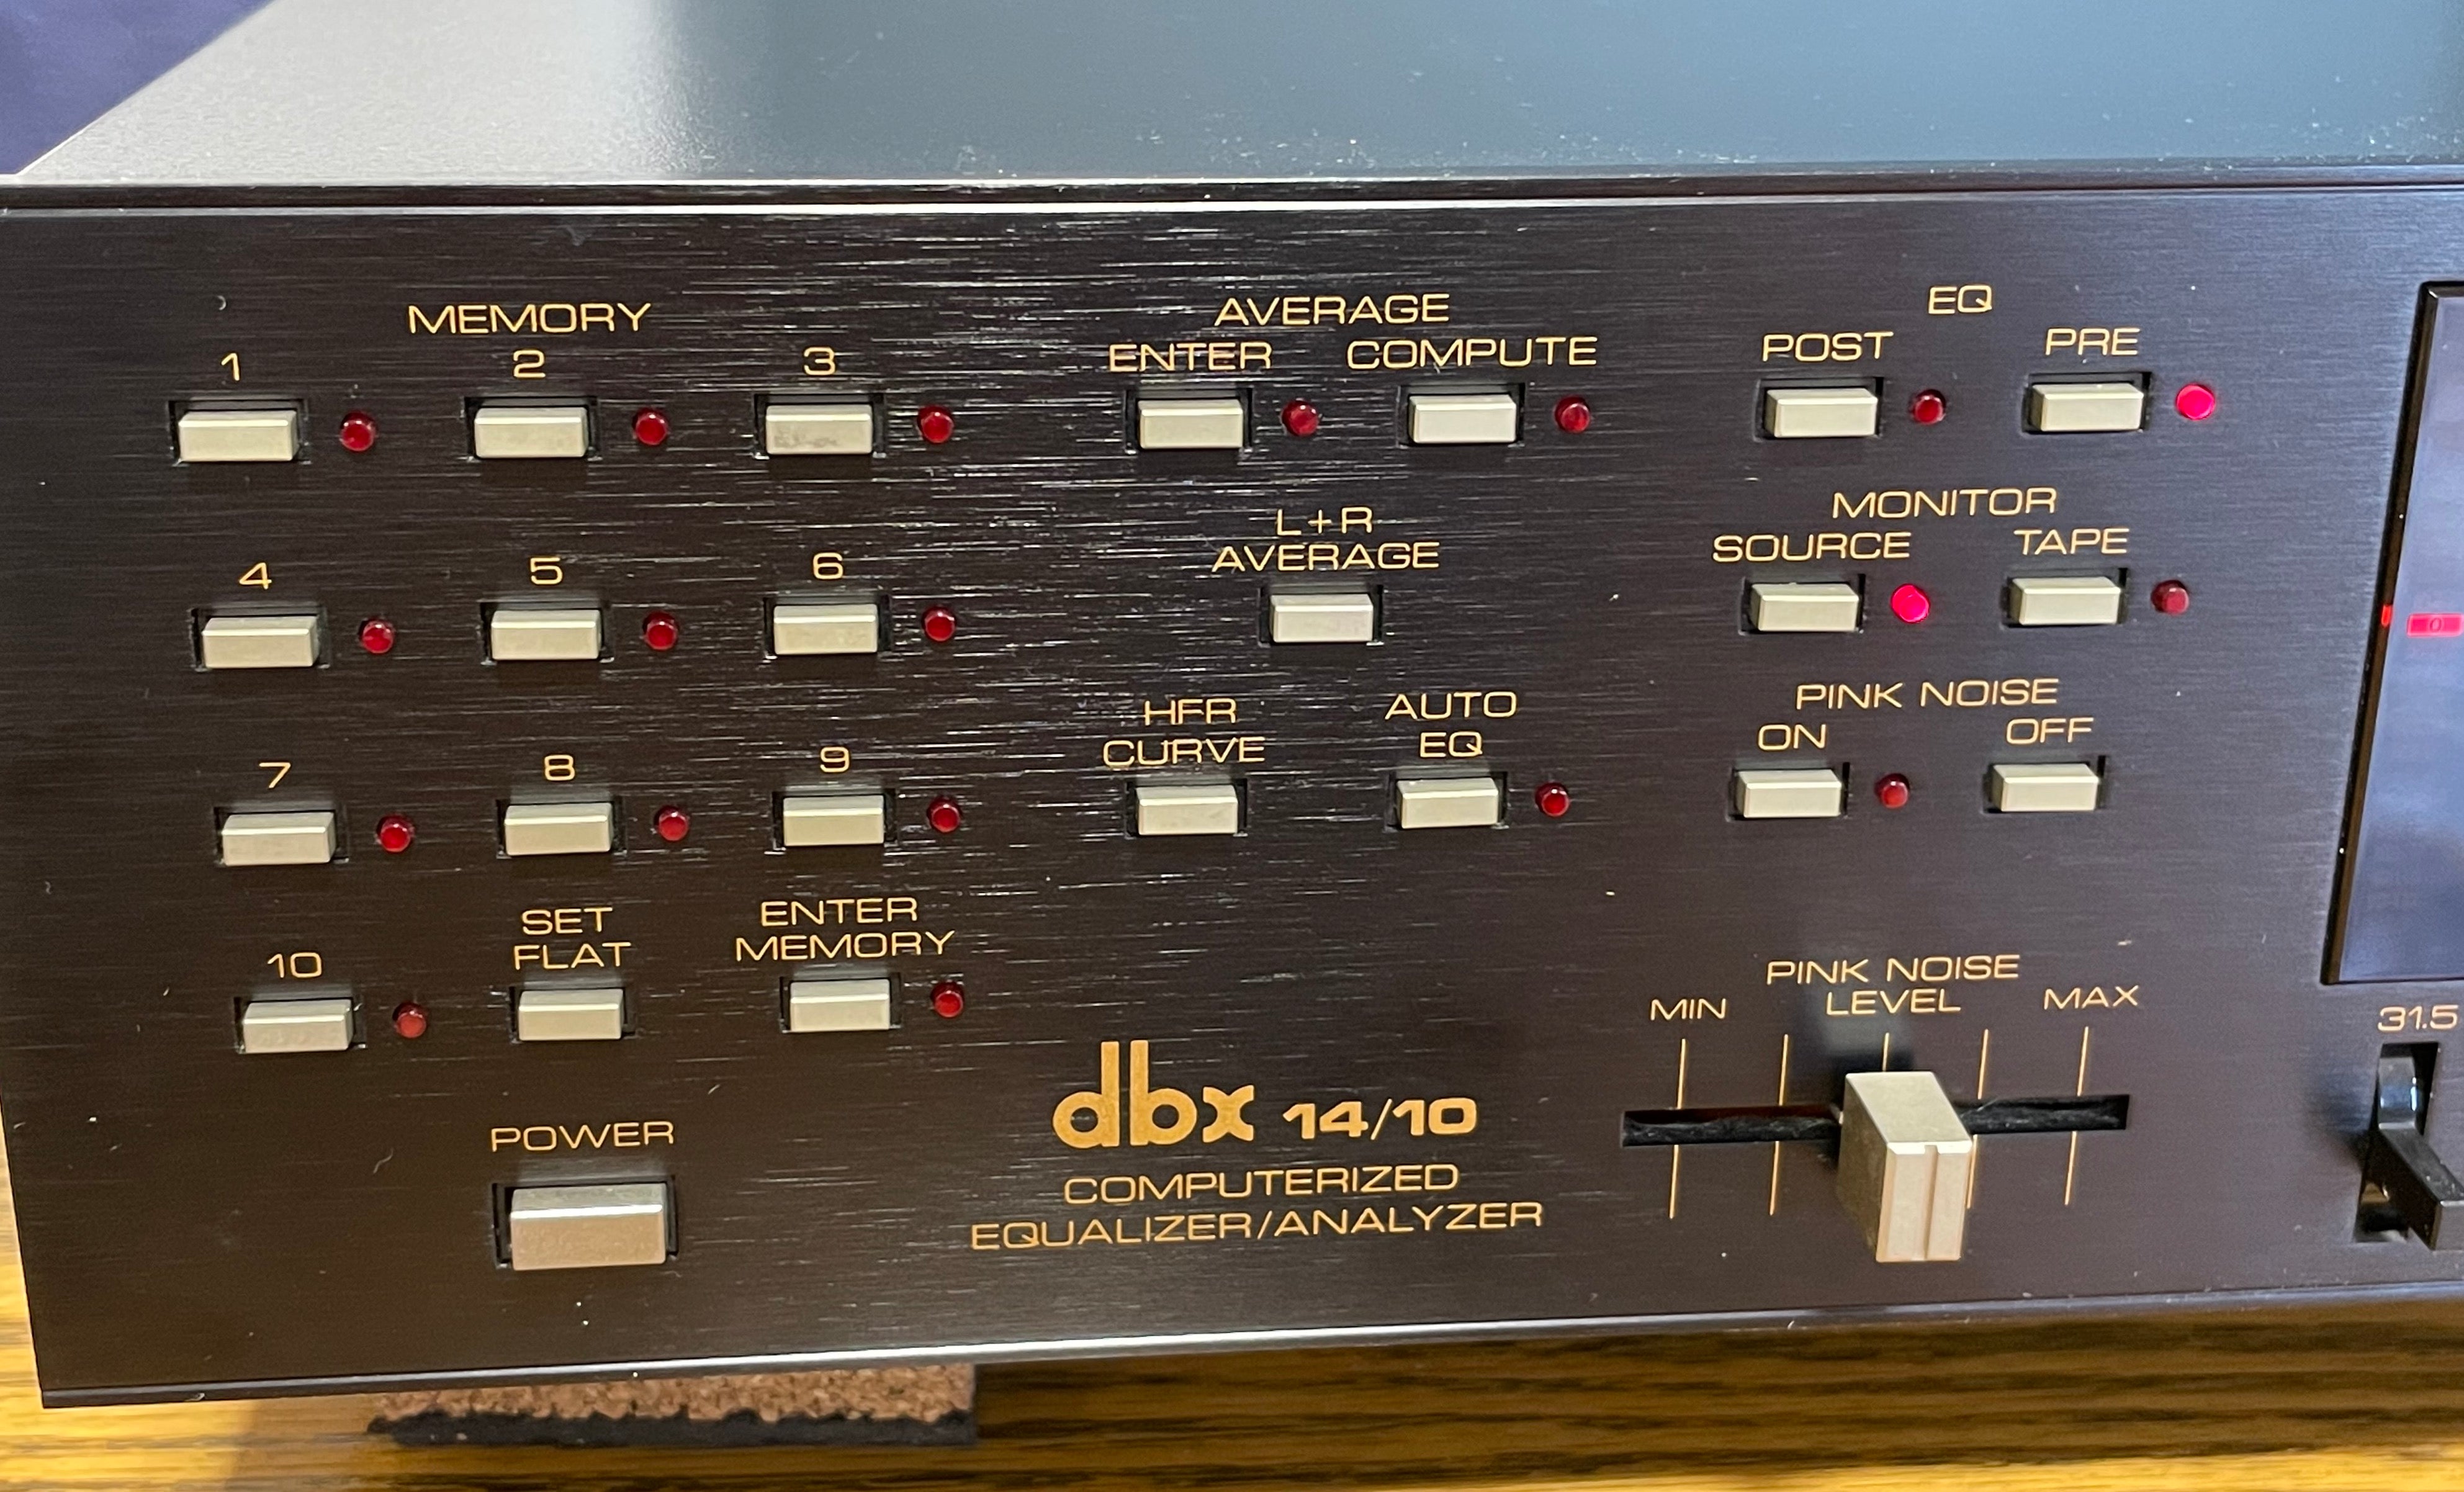 dbx 14/10 Computerized Equalizer/Analyzer - SOLD